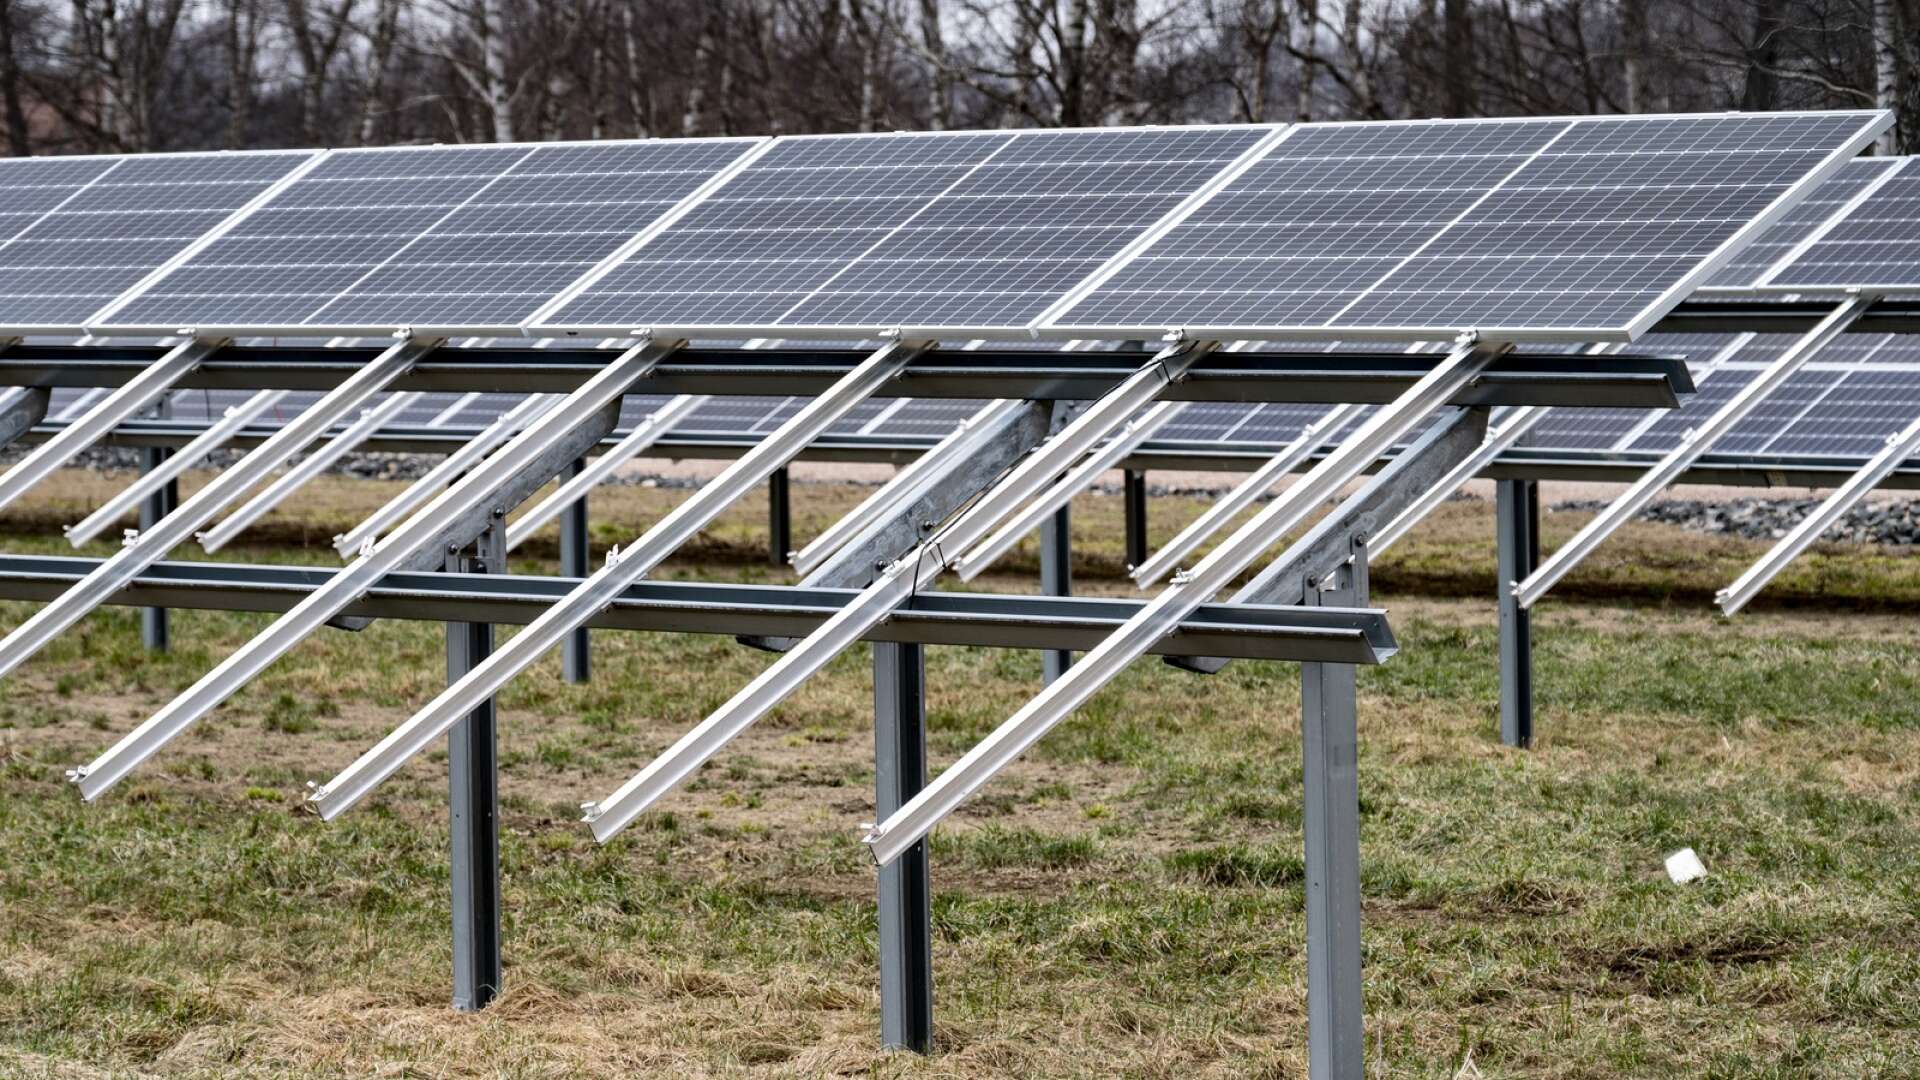 Planerna på att bygga solcellspark i Tveta har stannat av fram till våren, då länsstyrelsen ska genomföra en naturvärdesinventering på området. Bilden har ingenting med artikeln att göra.